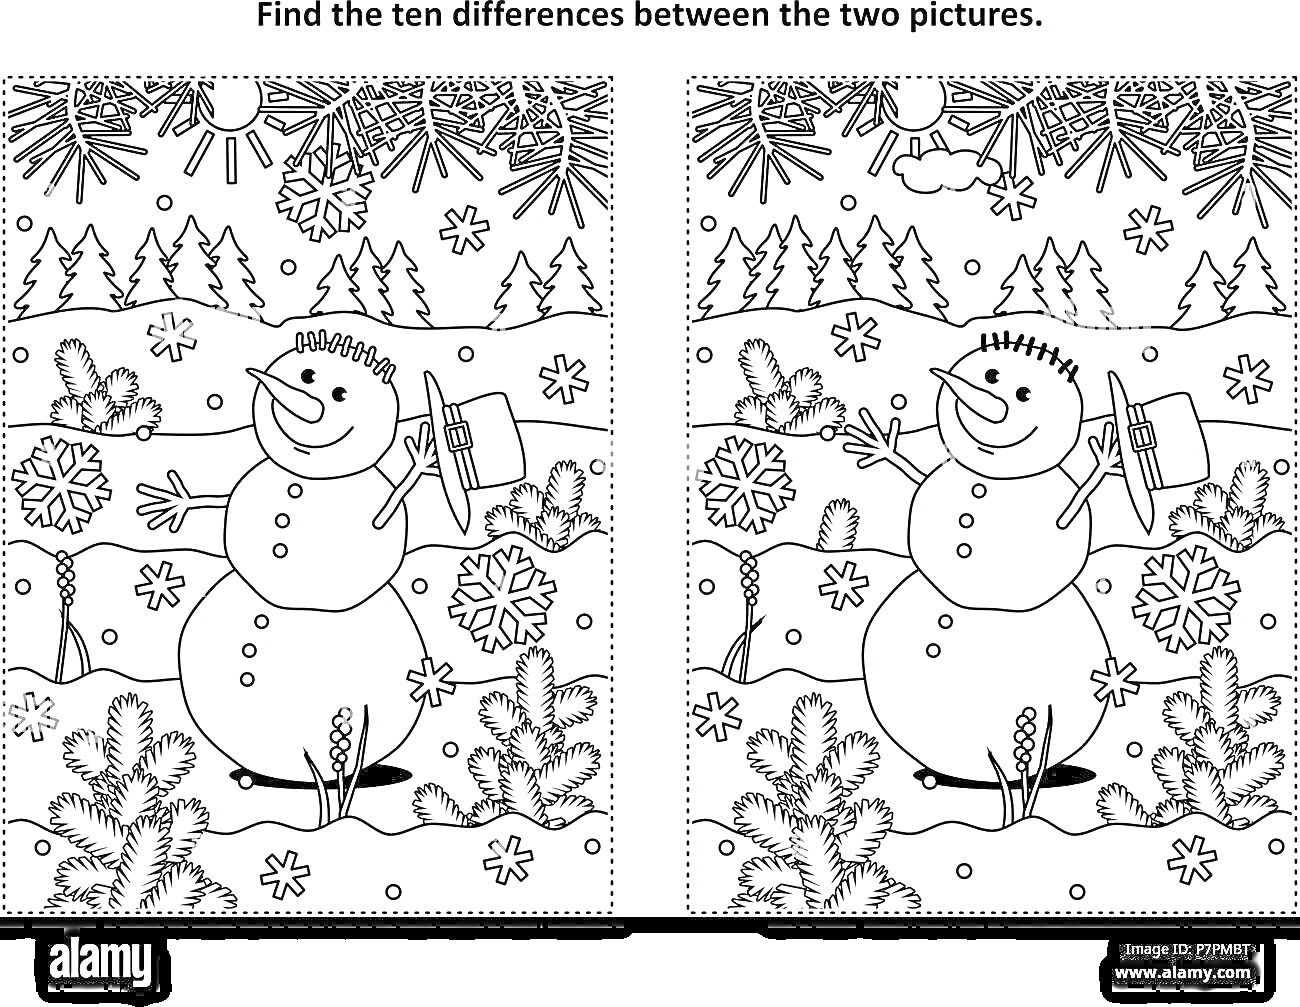 Раскраска найди отличия с изображением снеговика, одной елки, месяца на небе, снежинок, облака, леса, двух пару лыж, одной ёлочной игрушки, трех ветвей снега, снеговика с двумя палками в руках и двух пуговиц